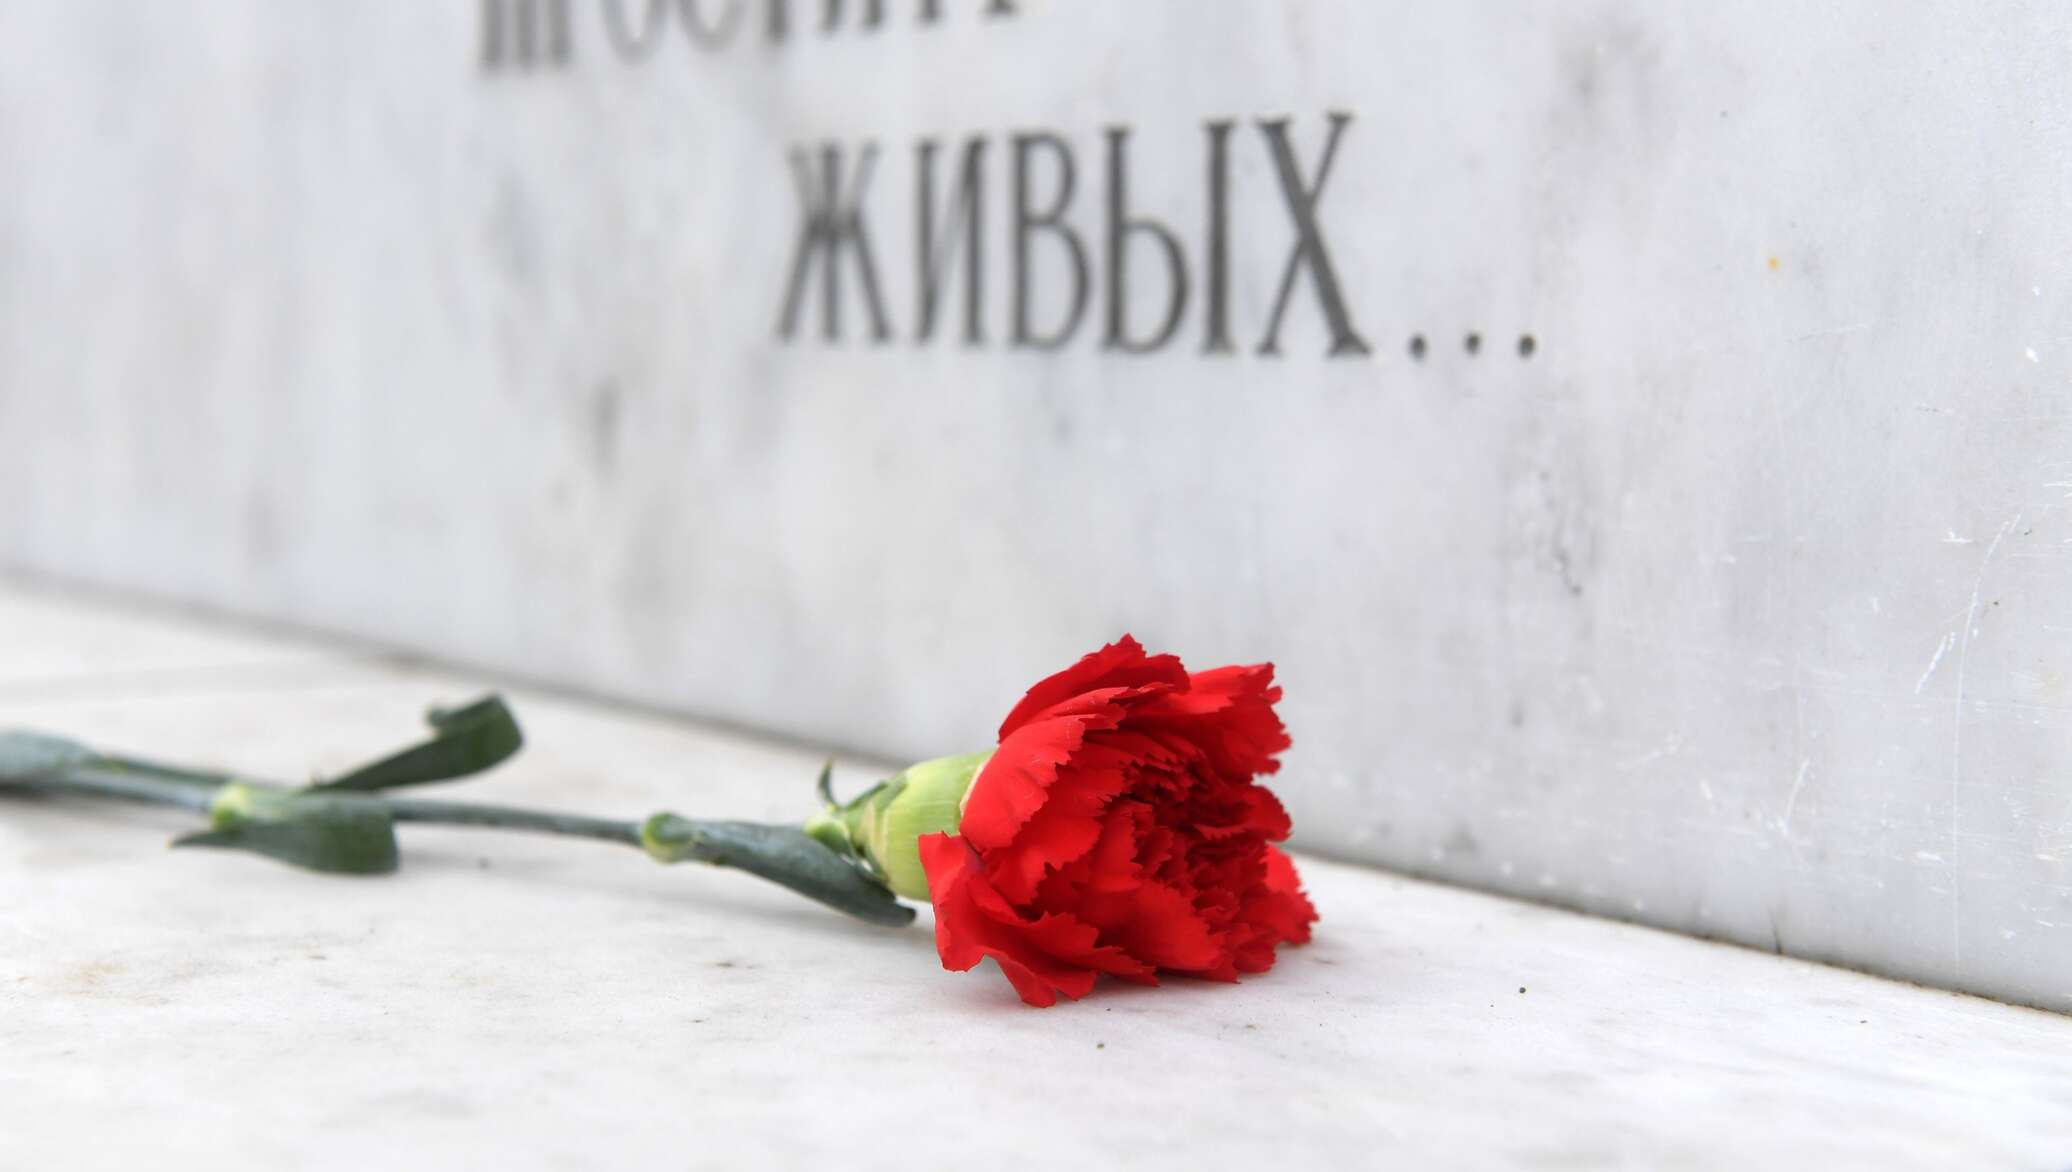 В России установлена памятная доска казахстанцу Дусембаю Кавкаеву, погибшему в 1941 году